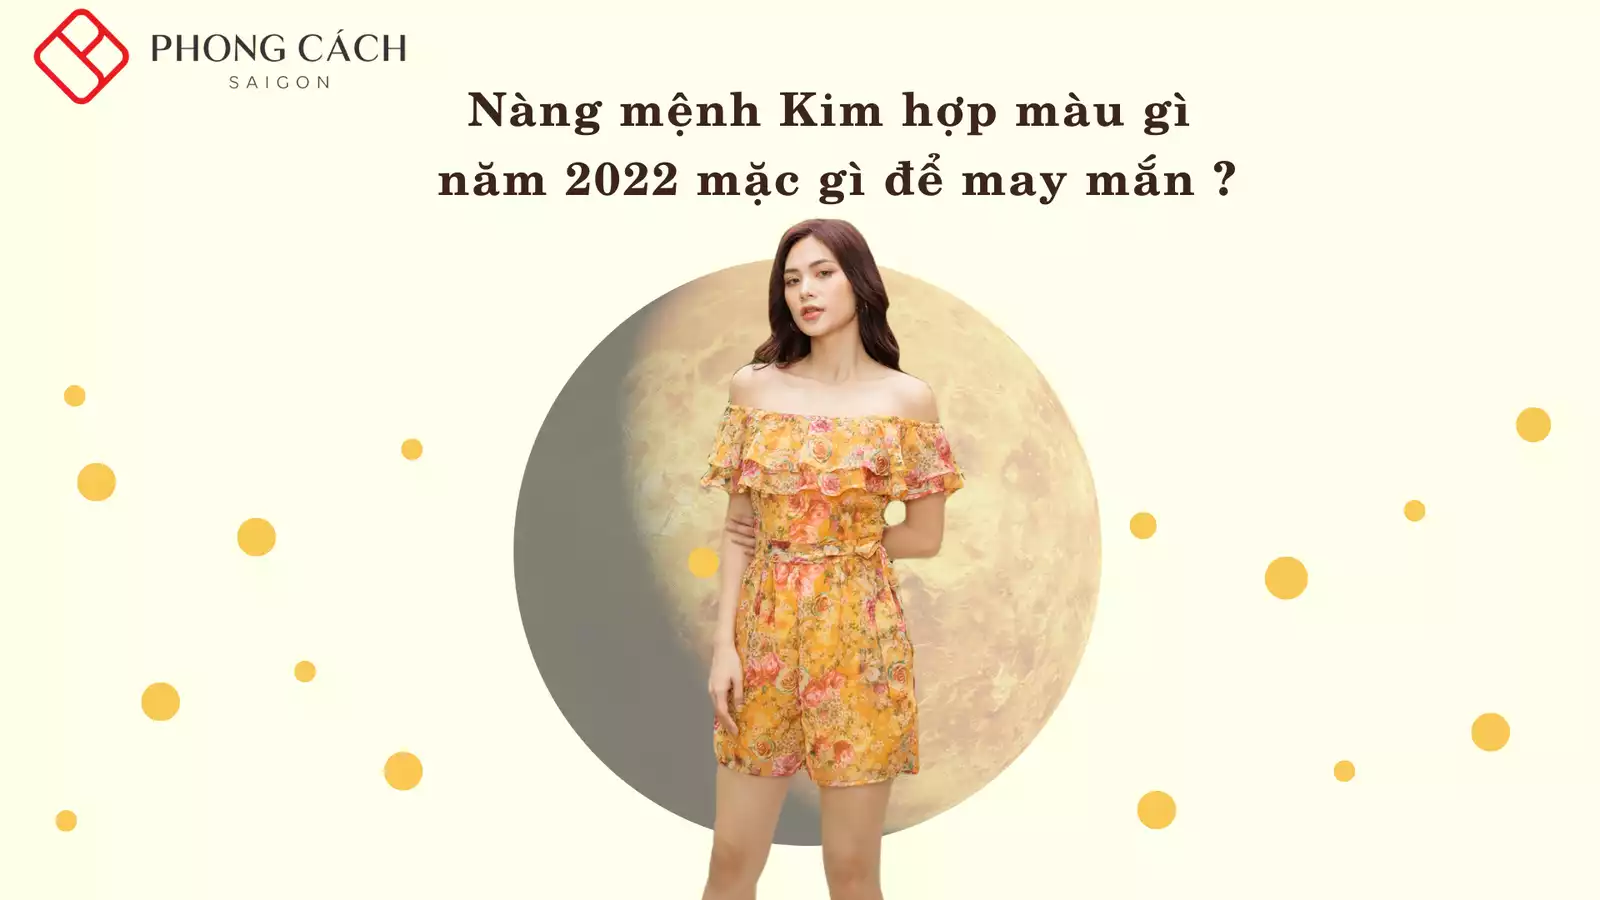 Nàng mệnh Kim hợp màu gì năm 2022 - mặc gì để may mắn ?